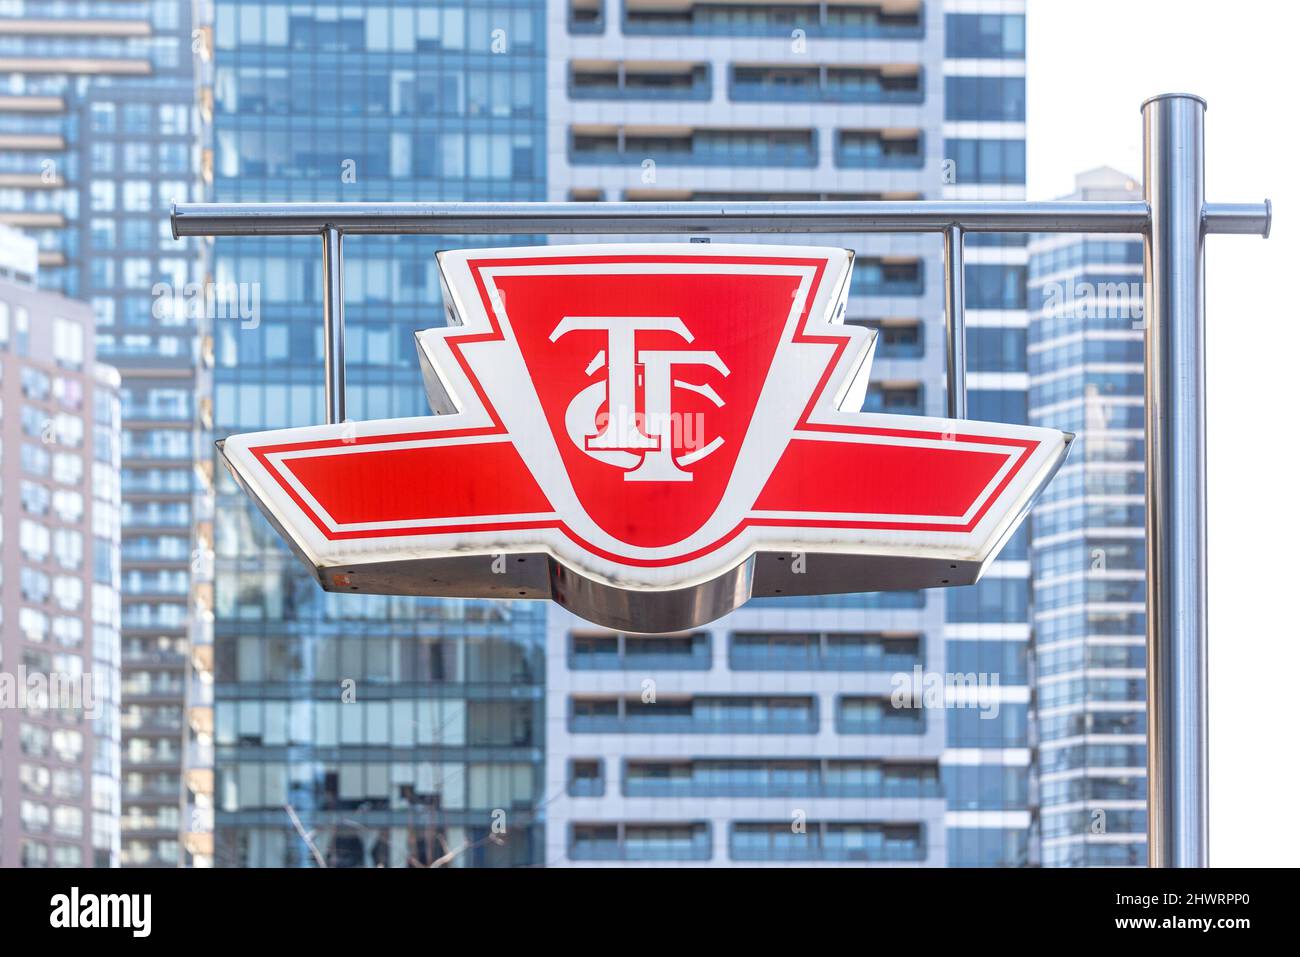 Toronto, Canada - 7 marzo 2022: Segno o il logo della TTC o della Toronto Transit Commission che è il più grande sistema di trasporto pubblico nel conto Foto Stock